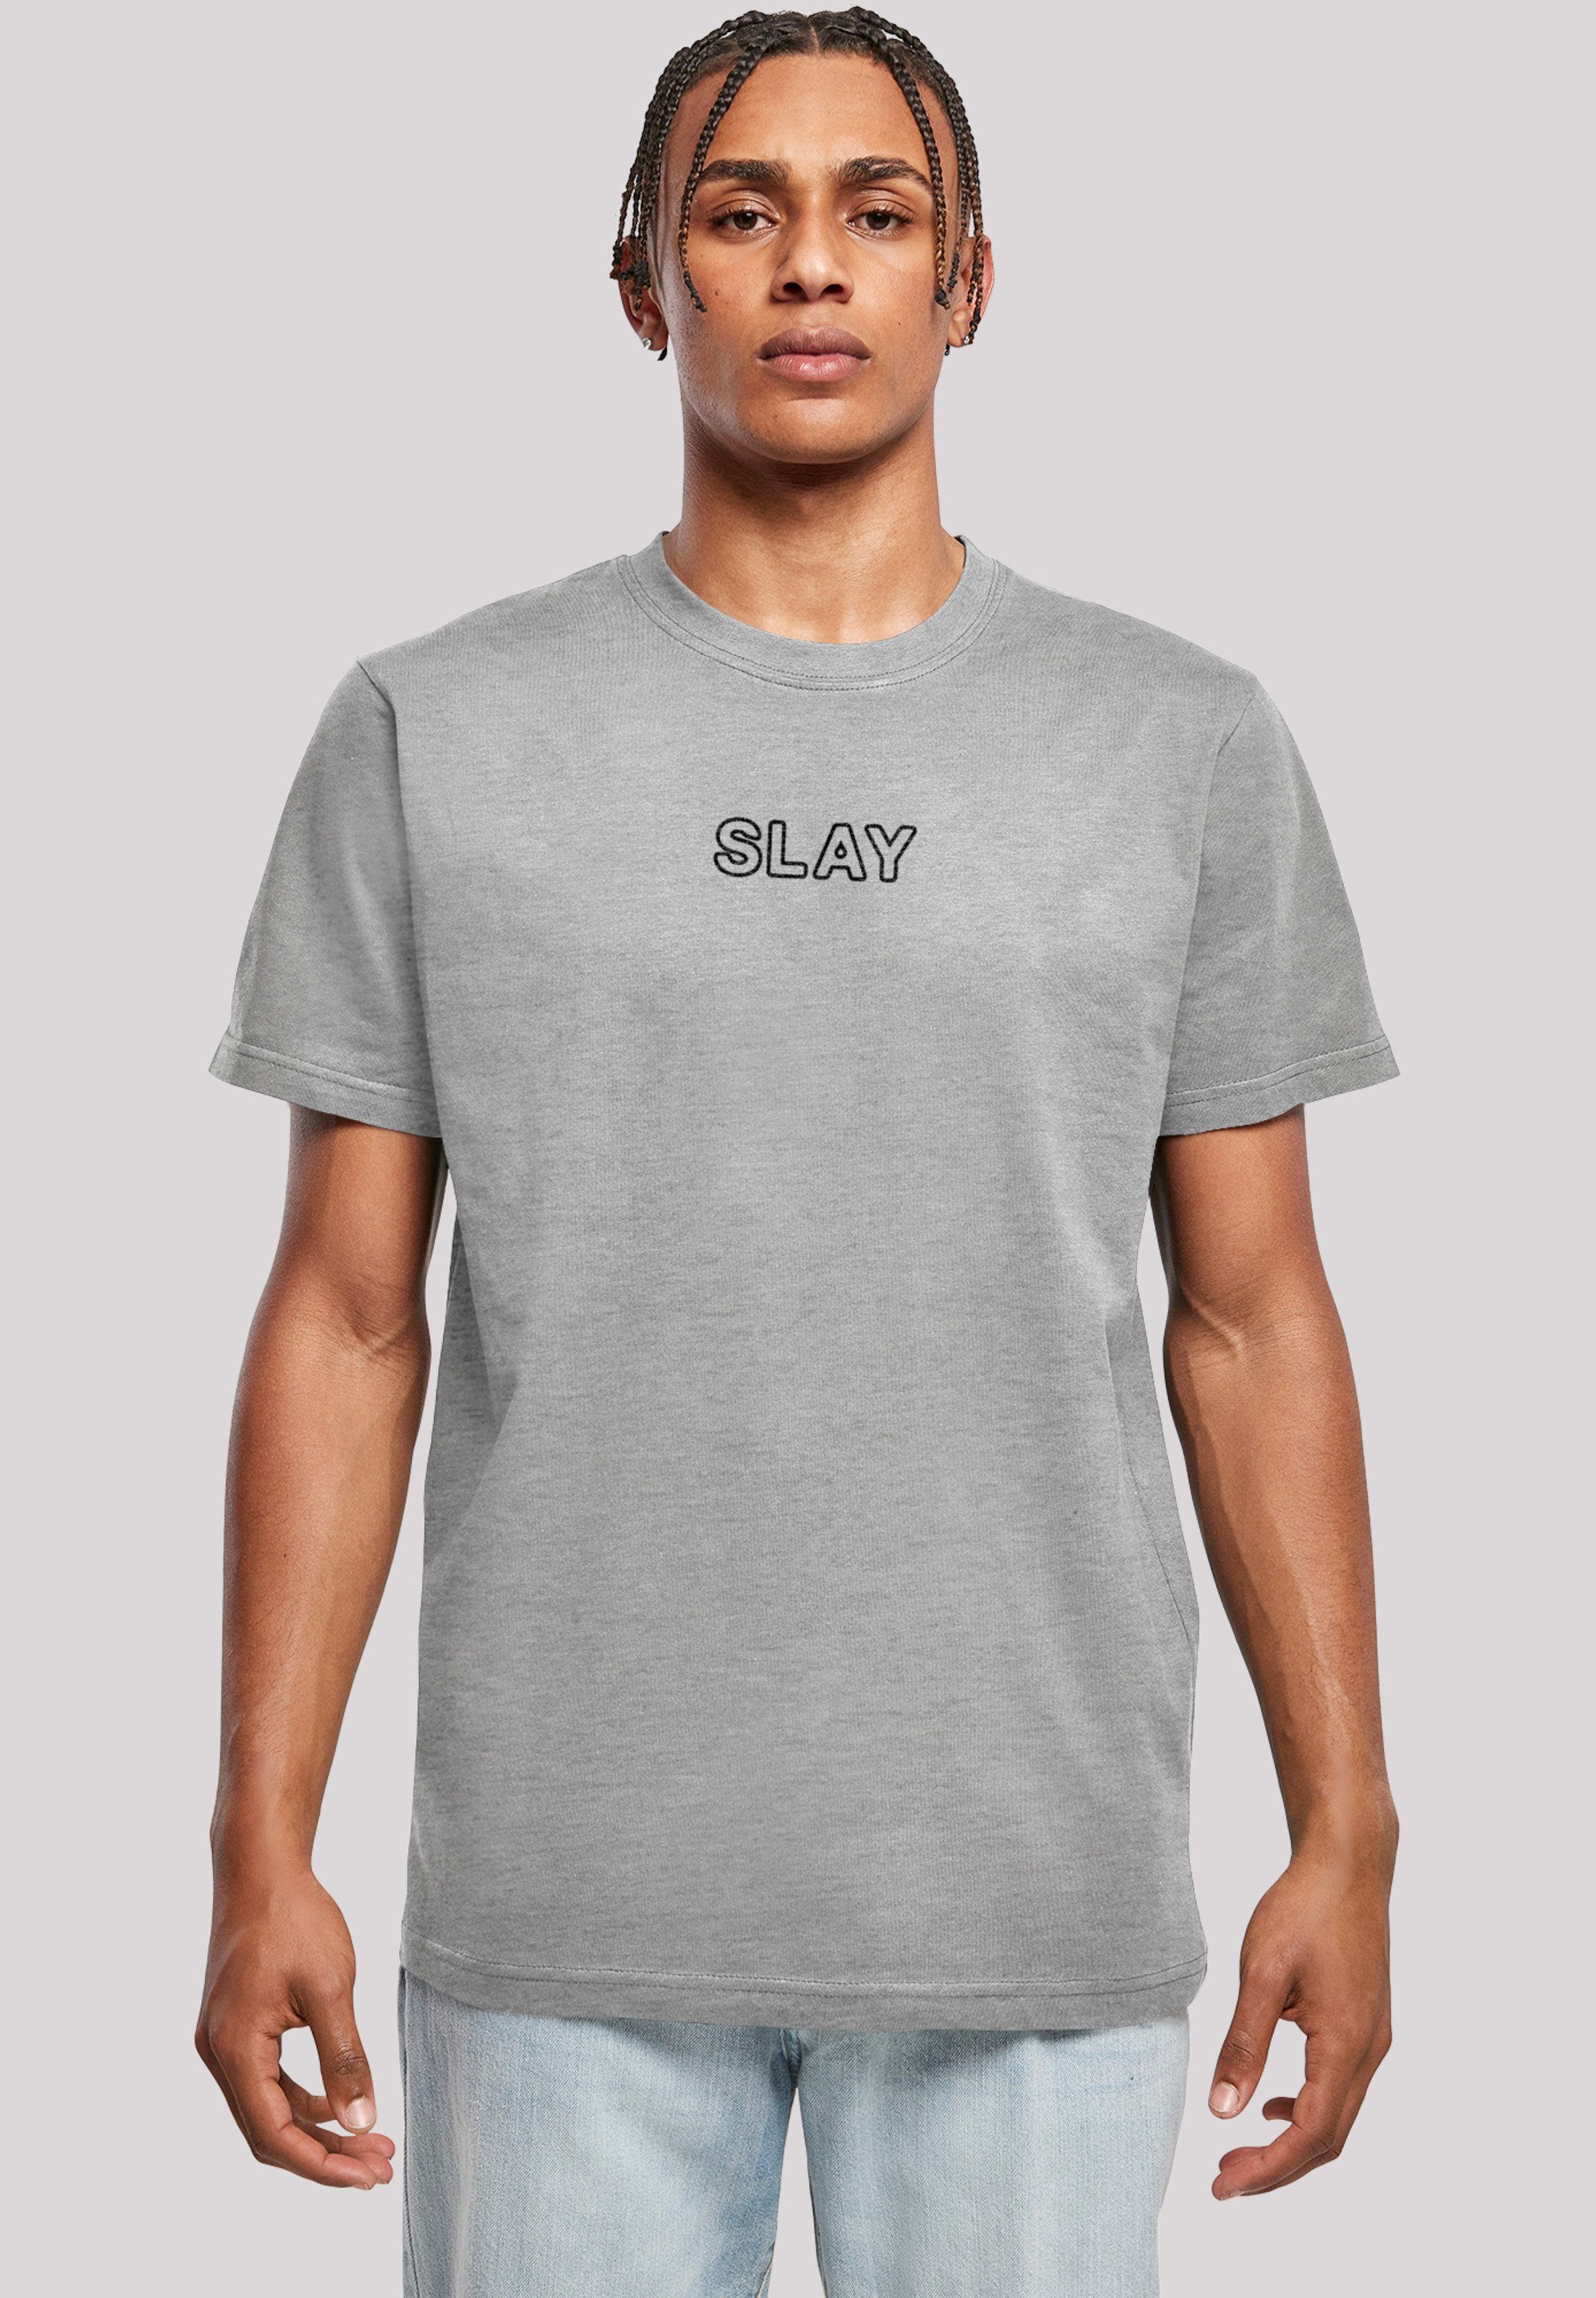 F4NT4STIC T-Shirt Slay Jugendwort 2022, slang